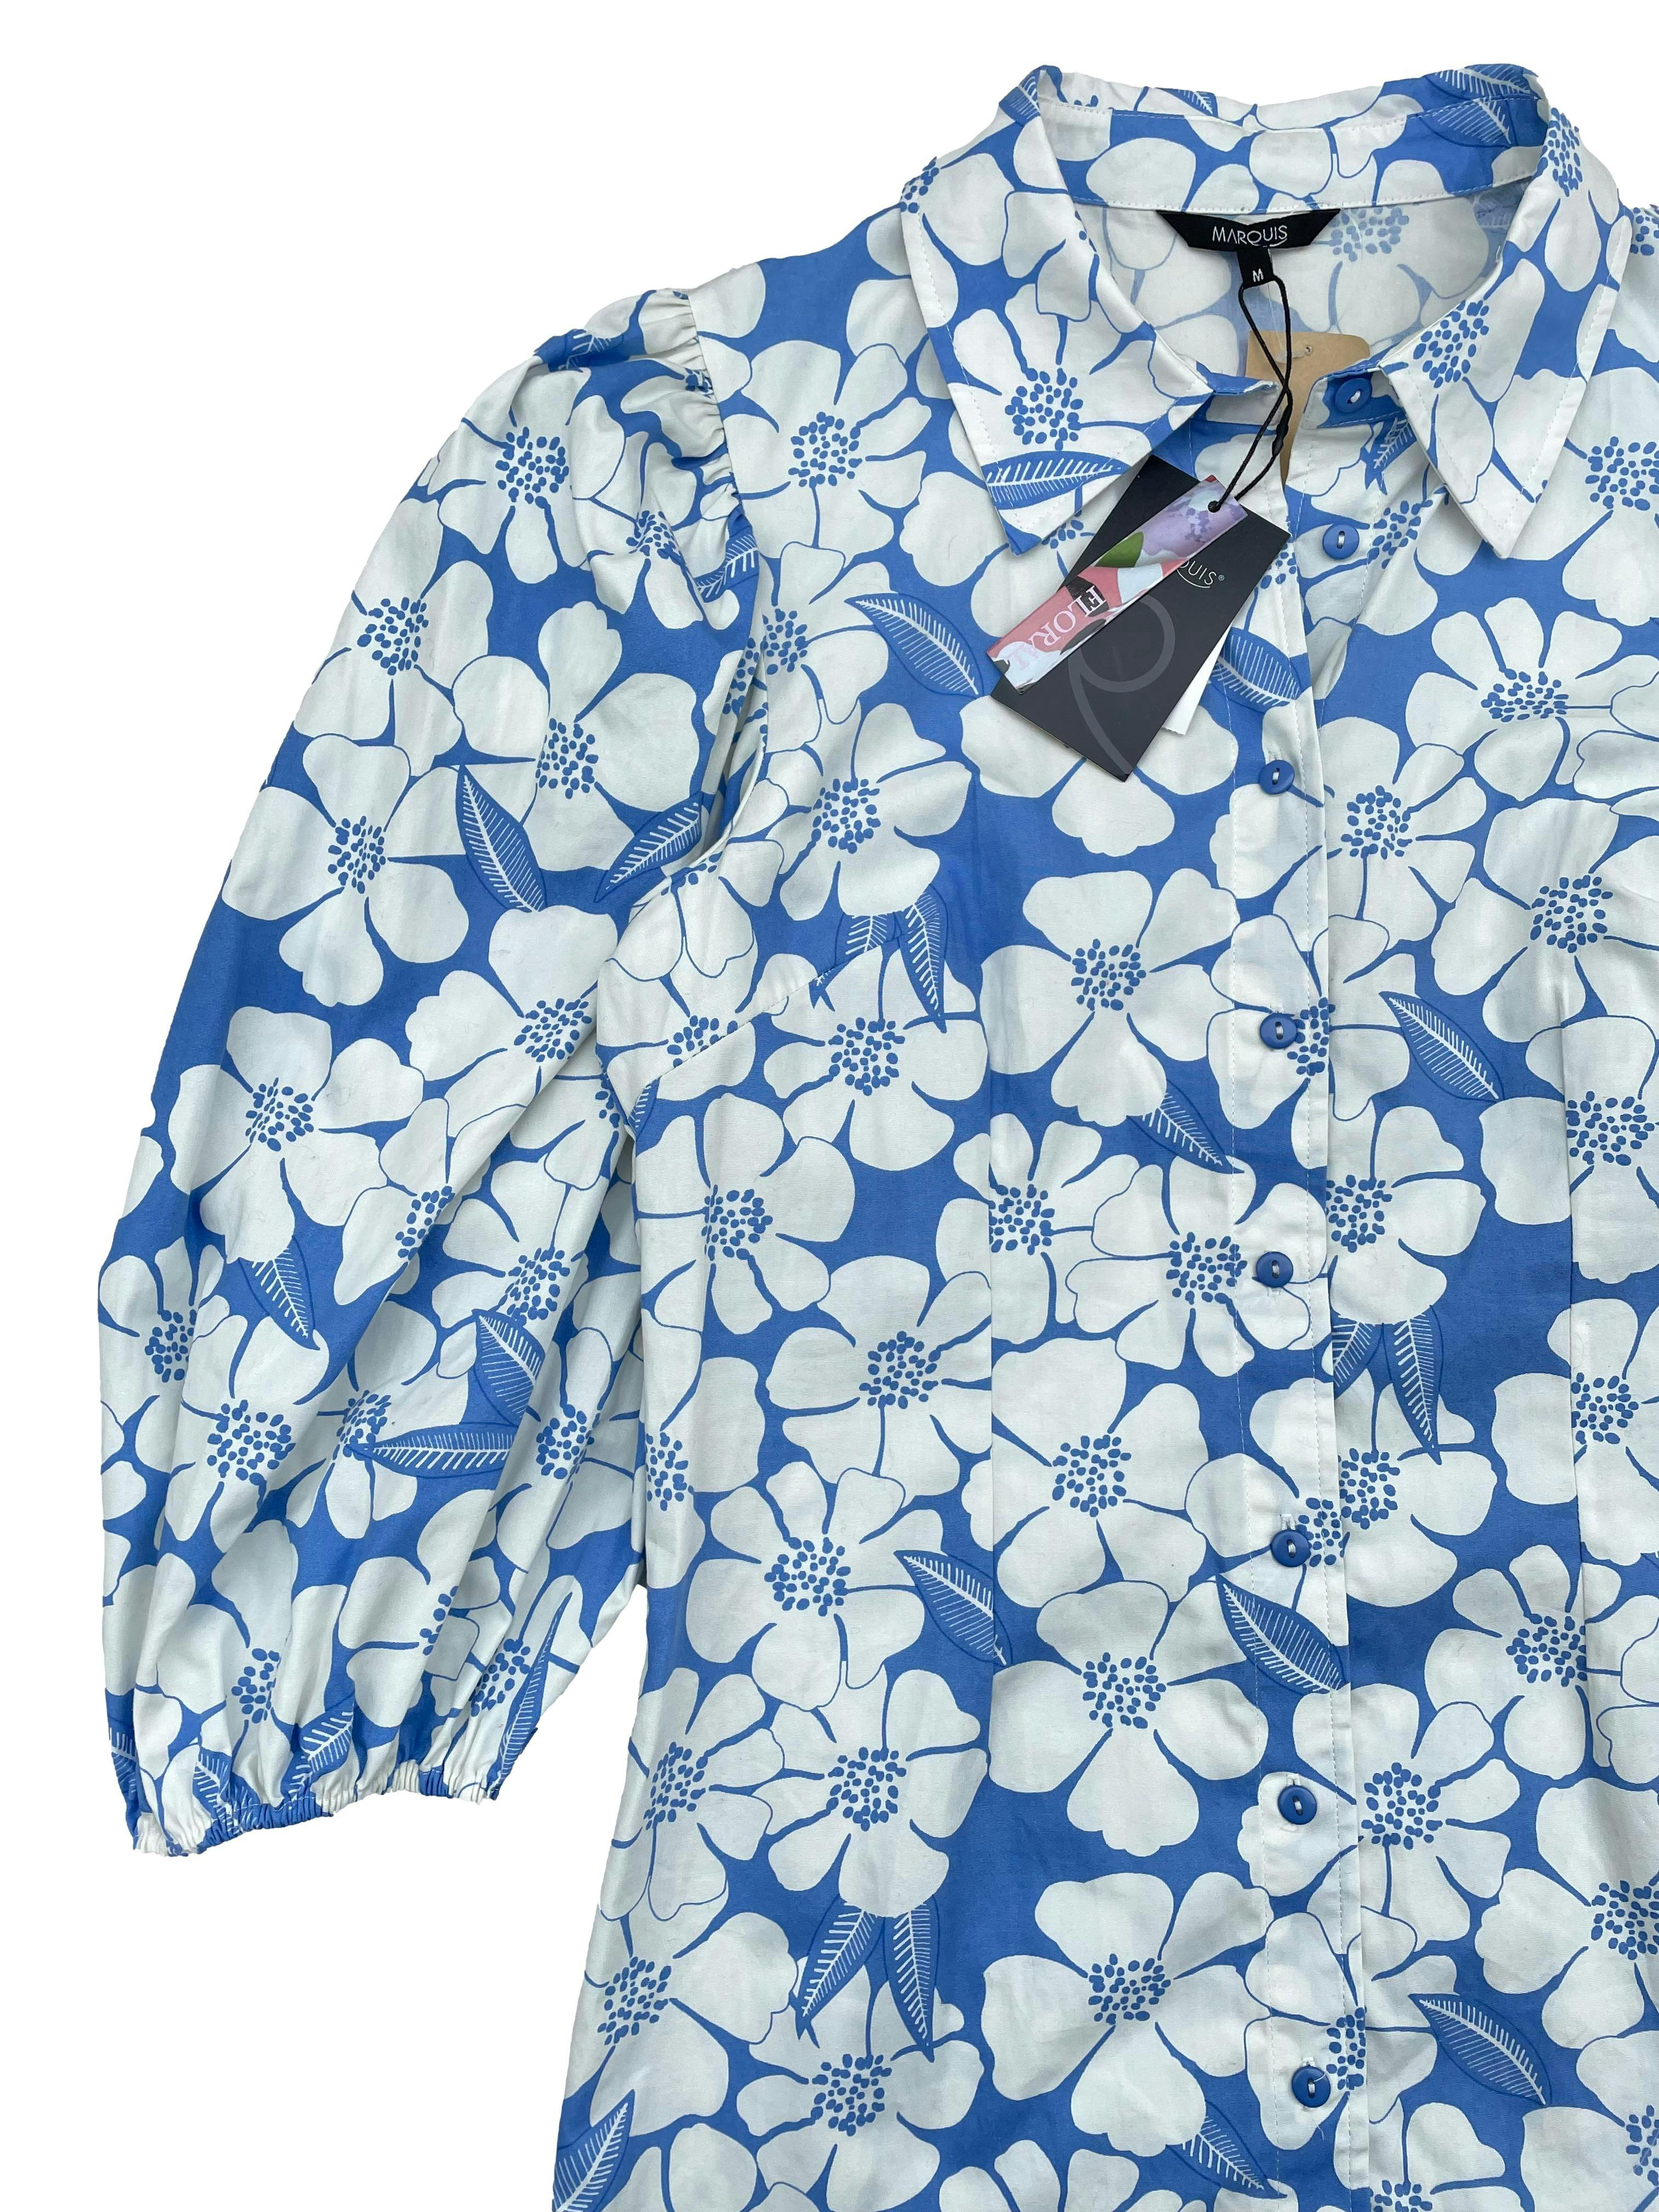 Vestido Marquis azul claro con estampado de flores blancas, botones delanteros y mangas 3/4 abullonadas, 100% algodón tipo camisa. Busto 98cm, Largo 85cm. Nuevo con etiqueta, precio original S/ 150